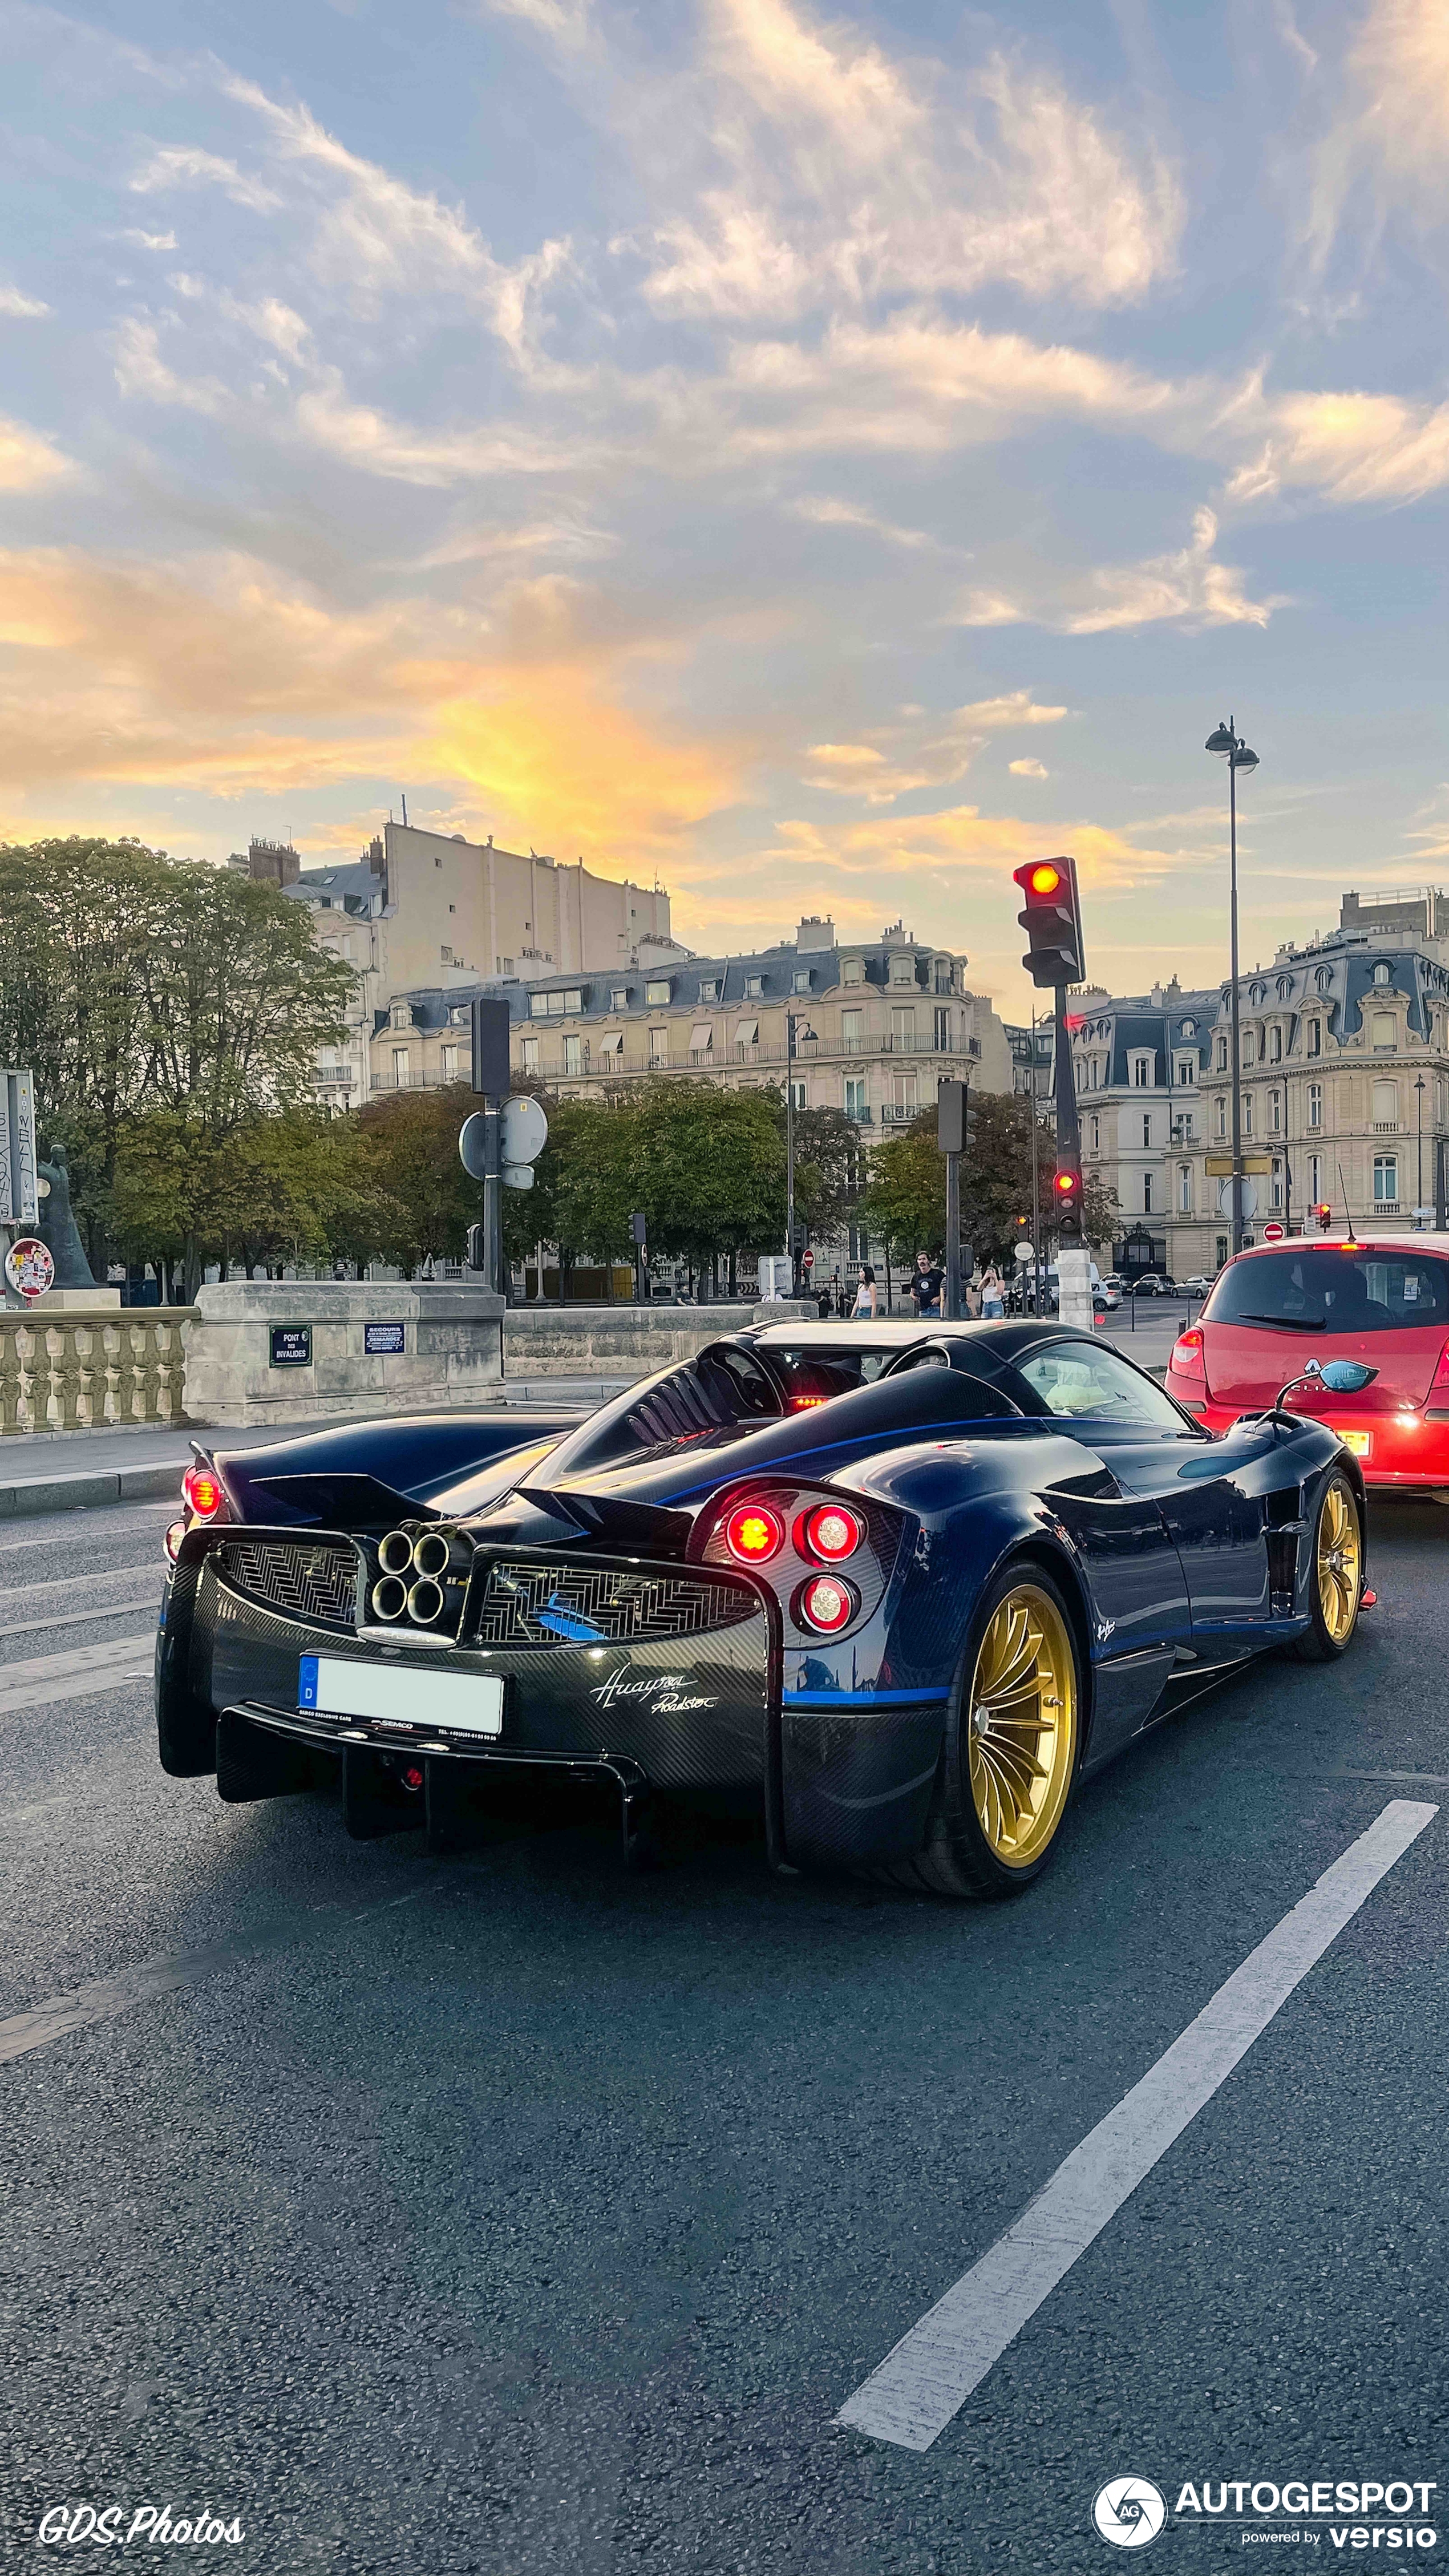 Još jednom, Huayra Roadster se pojavljuje u Parizu